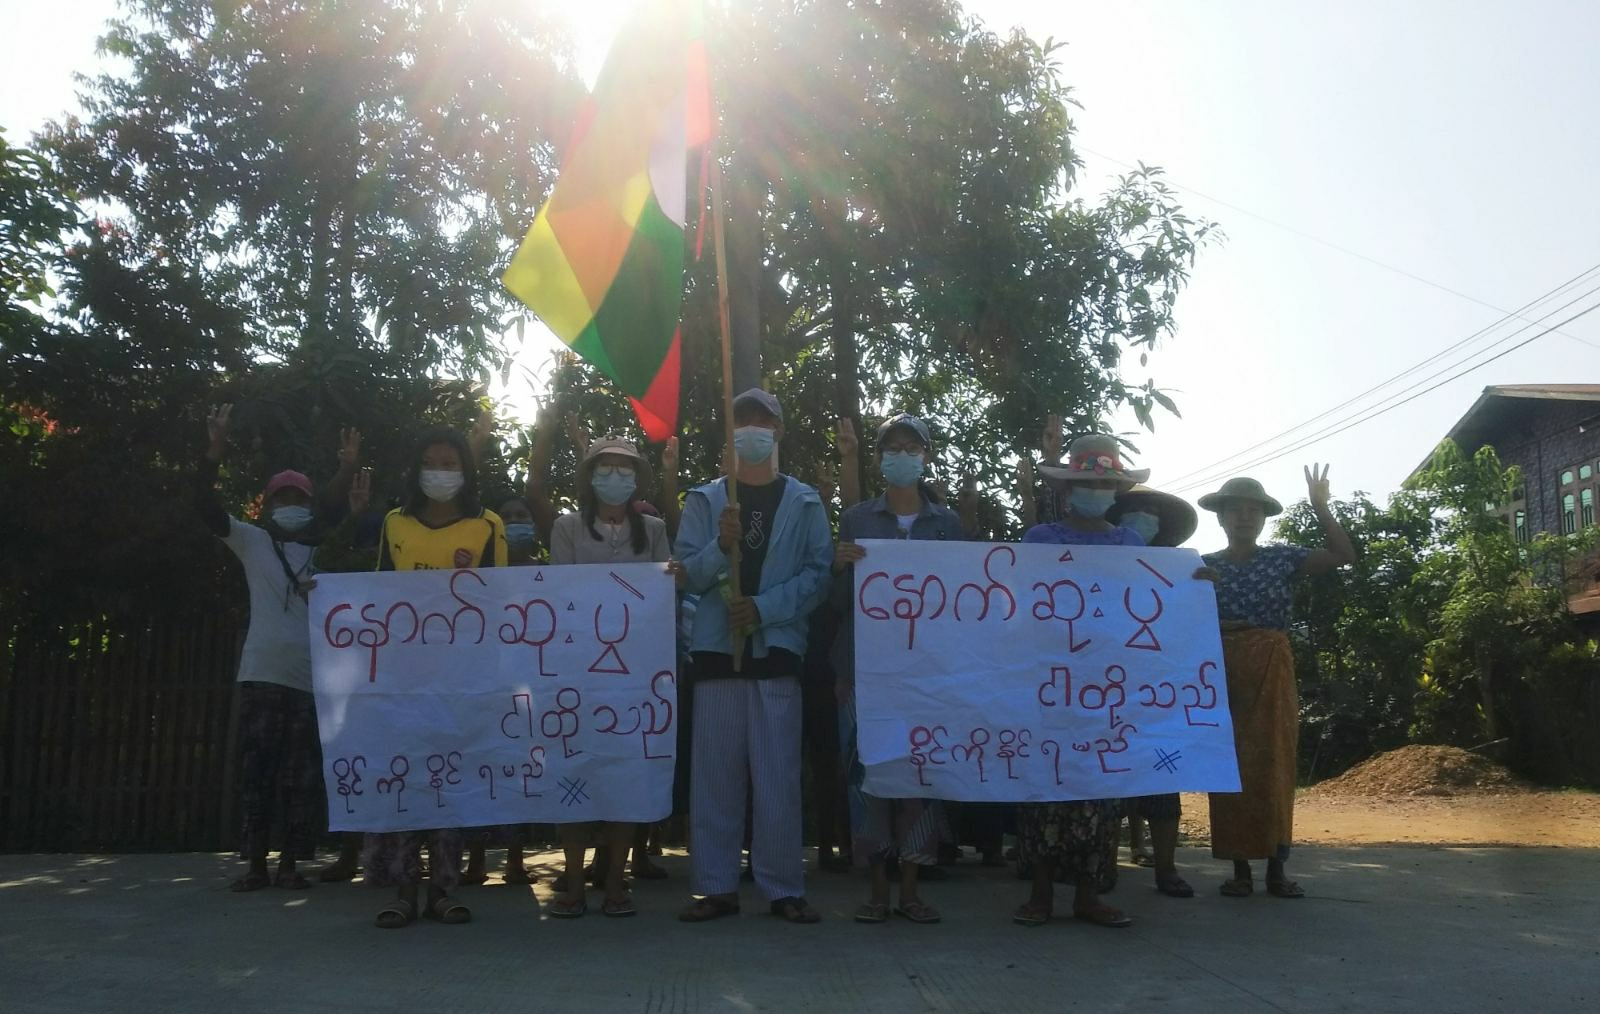 မိုးကောင်းမြို့မှ စစ်အာဏာရှင်စနစ် ဆန့်ကျင်ရေး ပြောက်ကျားသပိတ် ပြုလုပ်